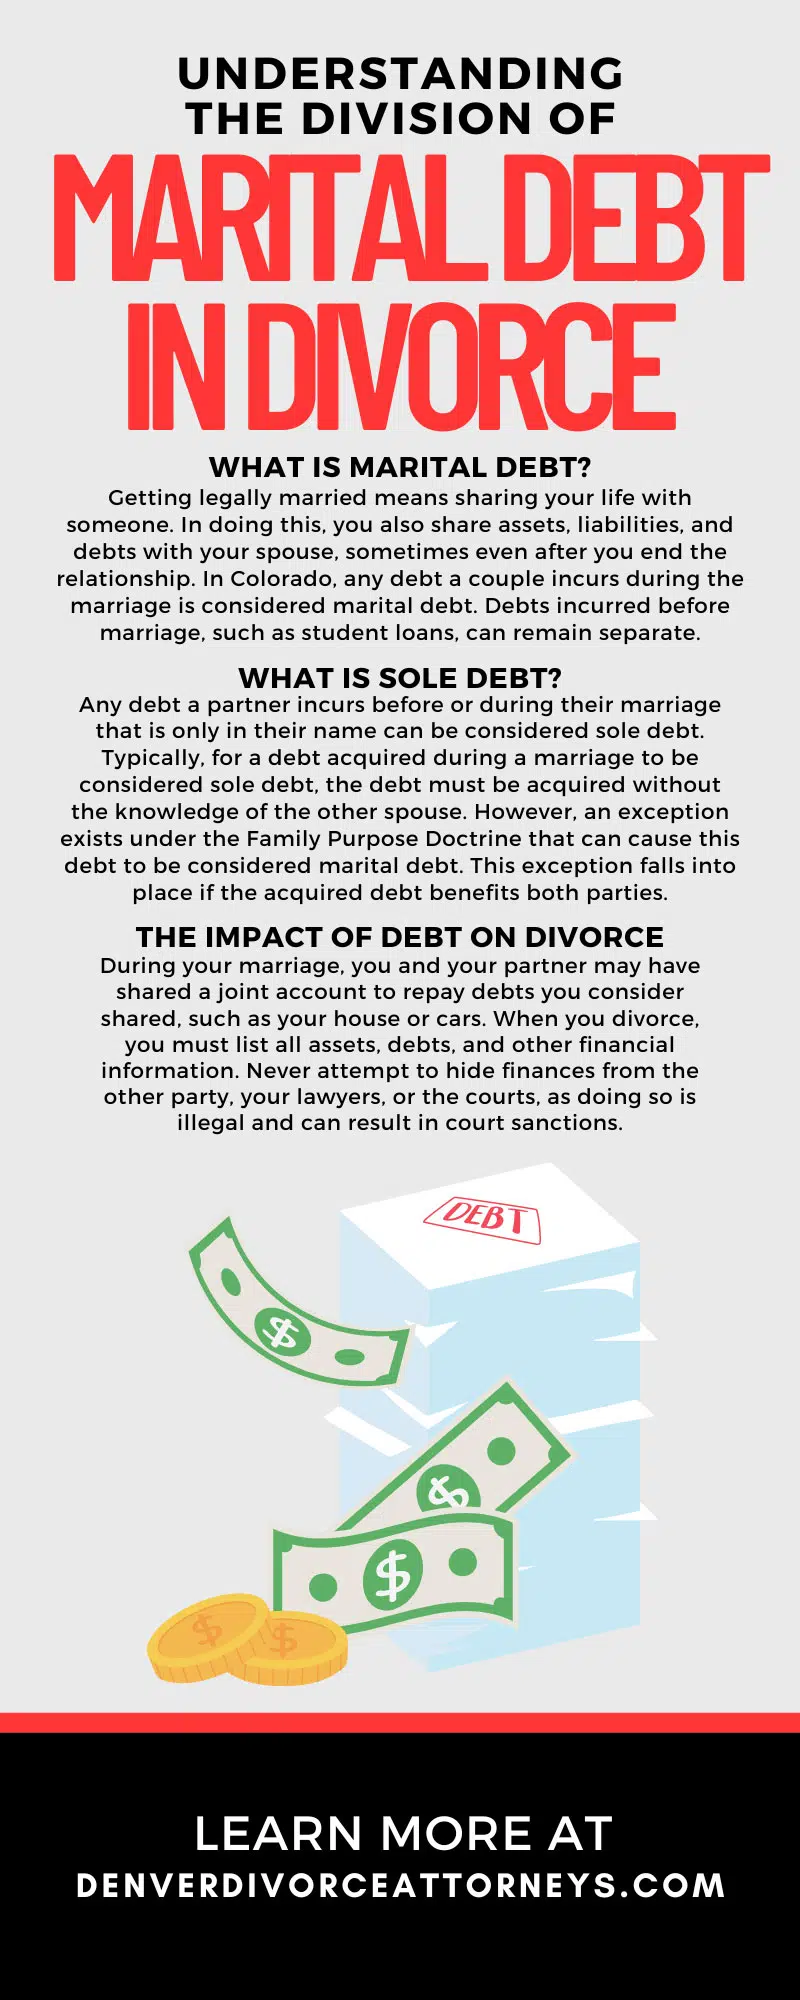 Understanding the Division of Marital Debt in Divorce
